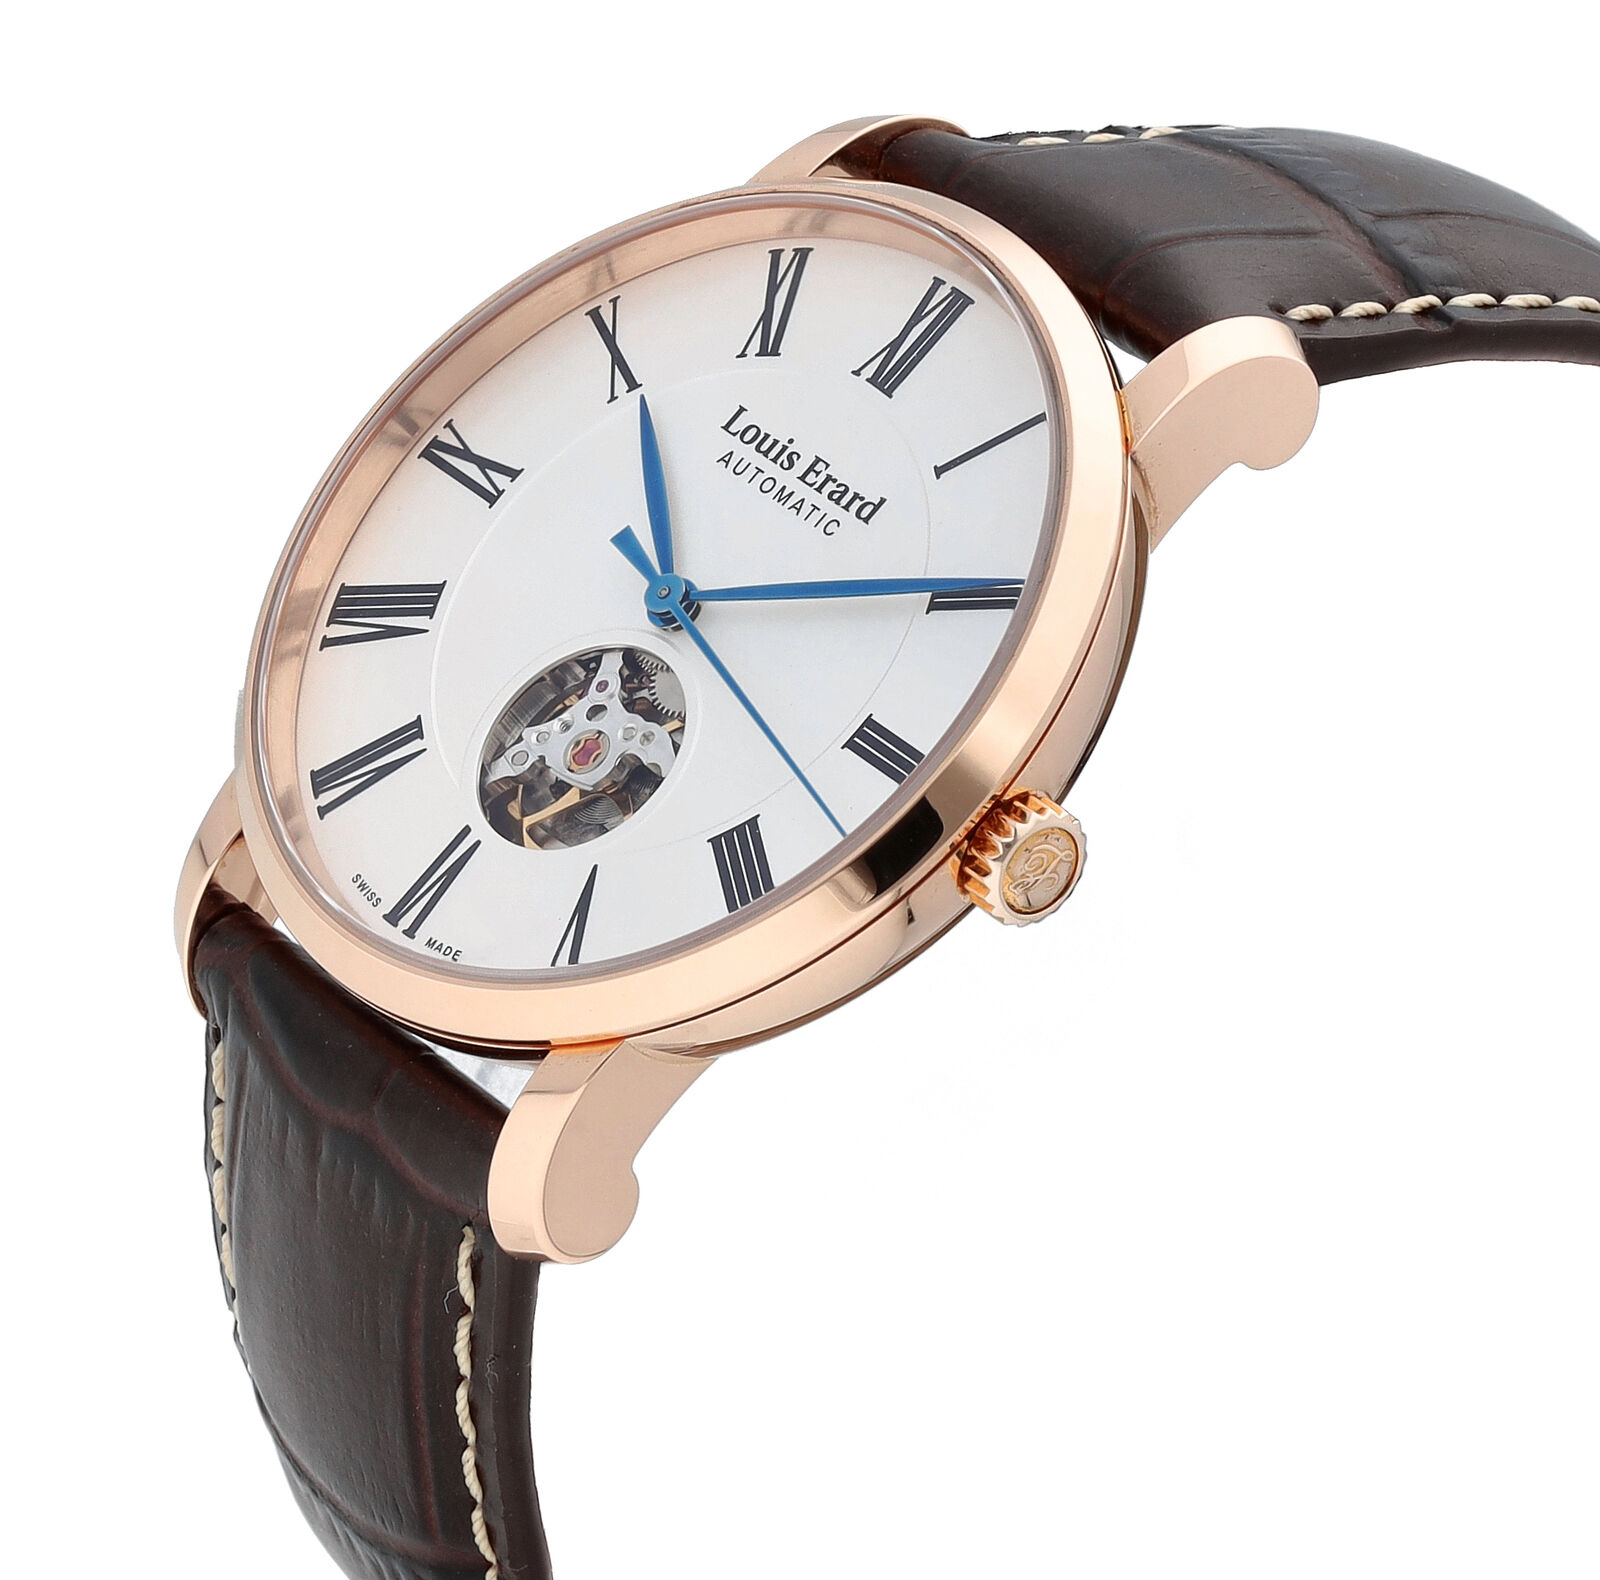 Louis Erard Men's Mechanical Automatic Wristwatches for sale